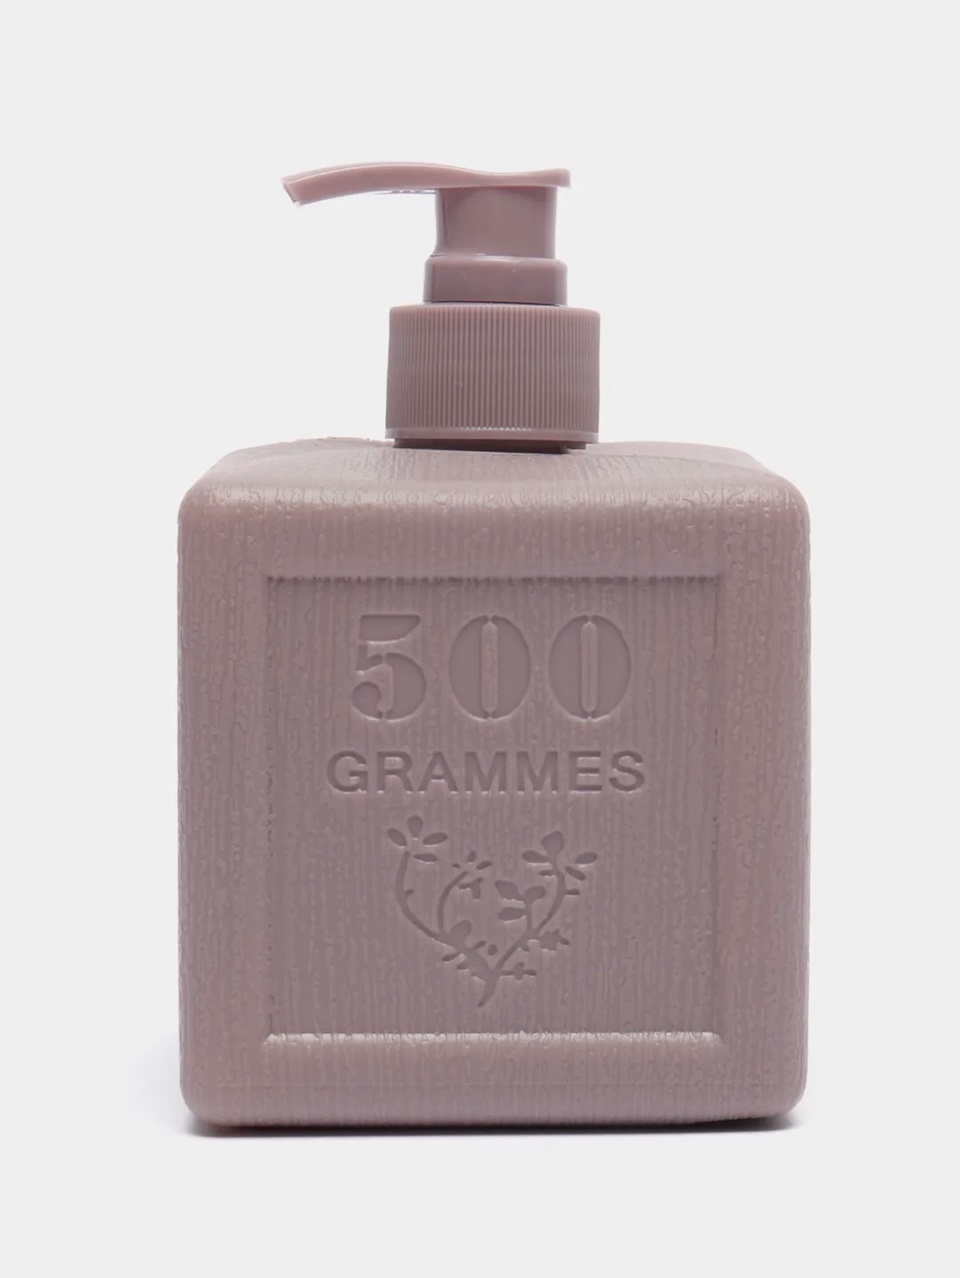 Savon De Royal Жидкое мыло для рук «Фиолетовый куб», серия «Прованс» - 200 ₽, заказать онлайн.